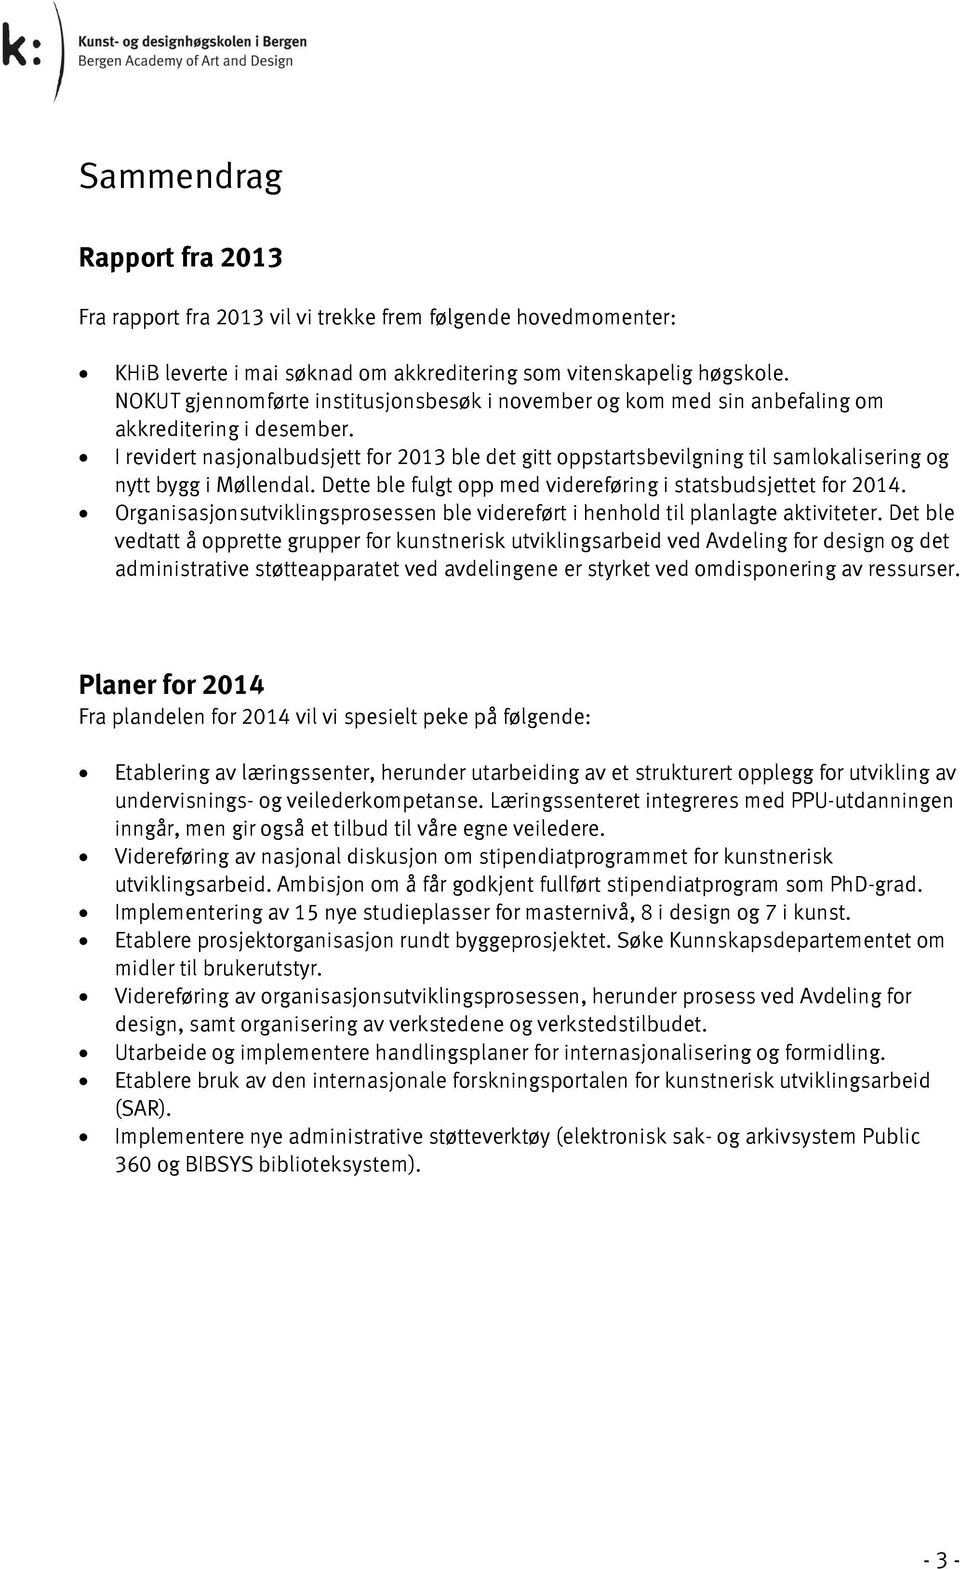 I revidert nasjonalbudsjett for 2013 ble det gitt oppstartsbevilgning til samlokalisering og nytt bygg i Møllendal. Dette ble fulgt opp med videreføring i statsbudsjettet for 2014.